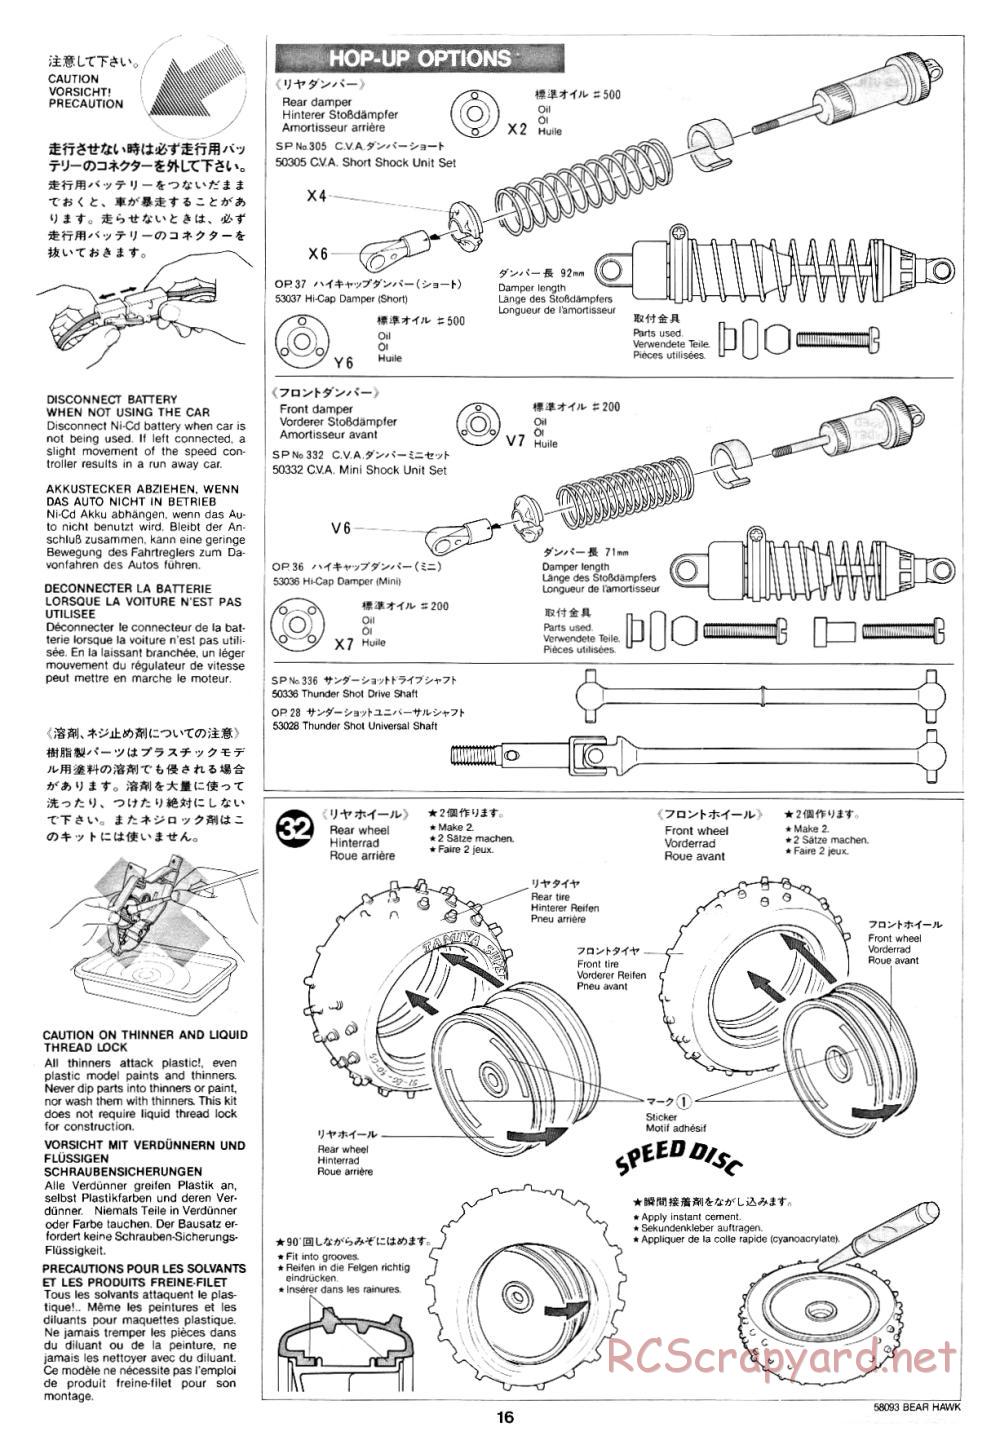 Tamiya - Bear Hawk - 58093 - Manual - Page 16